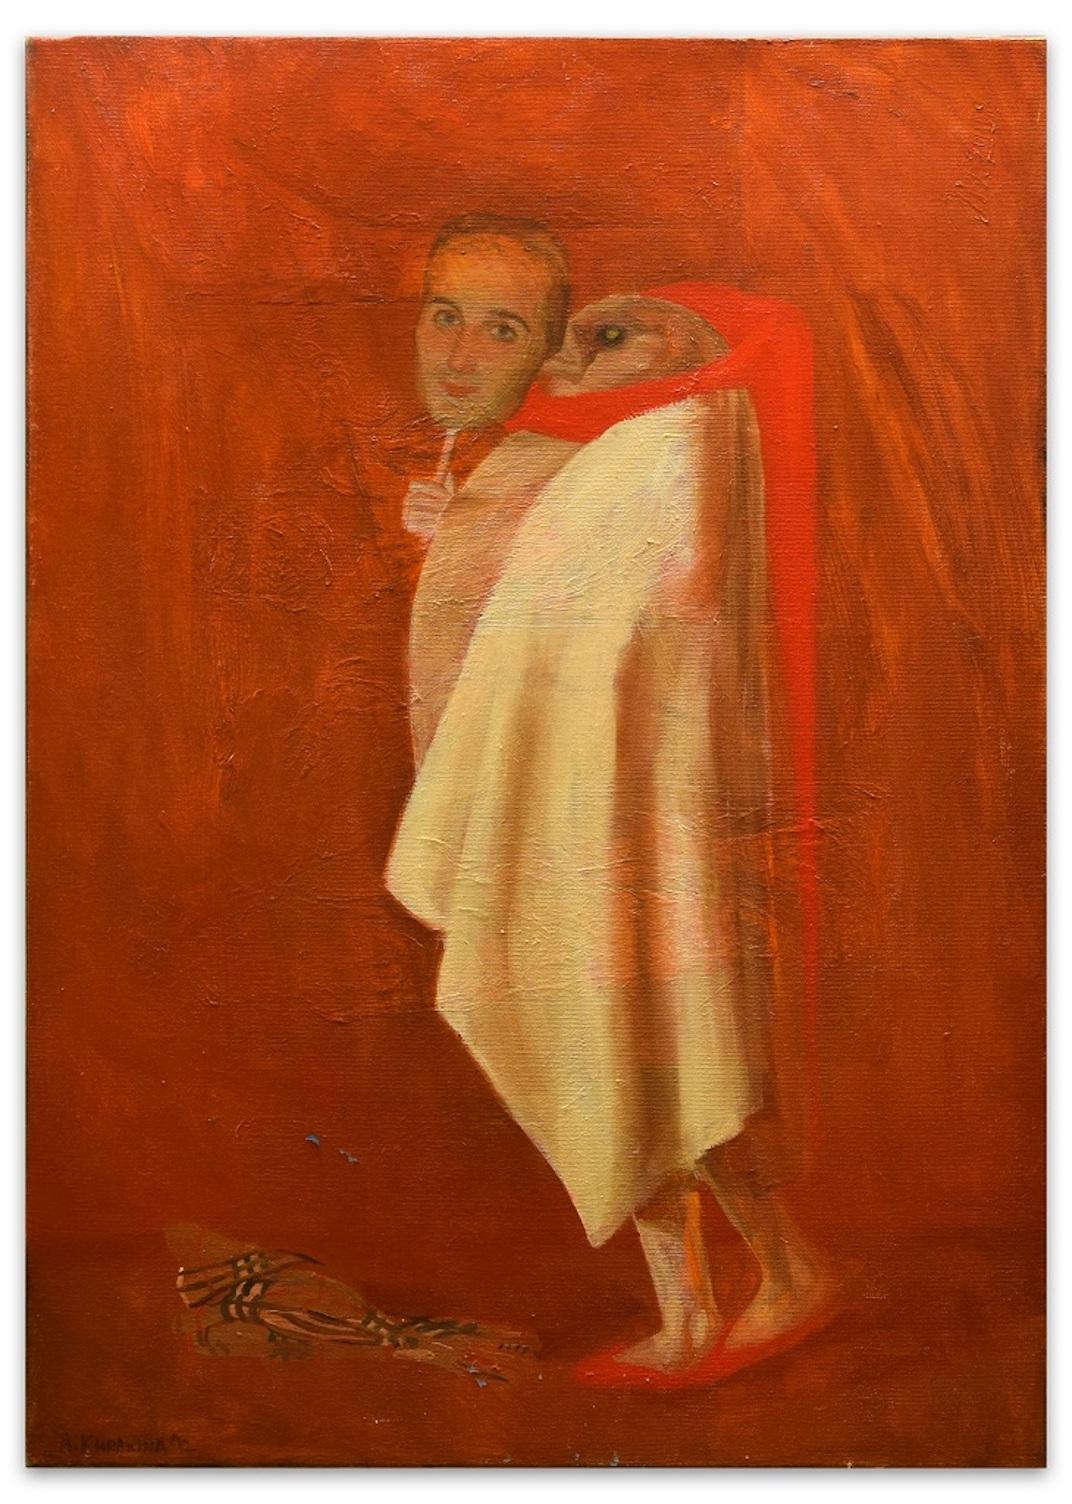 Dorian G. - Original Oil on Canvas by Anastasia Kurakina - 2012